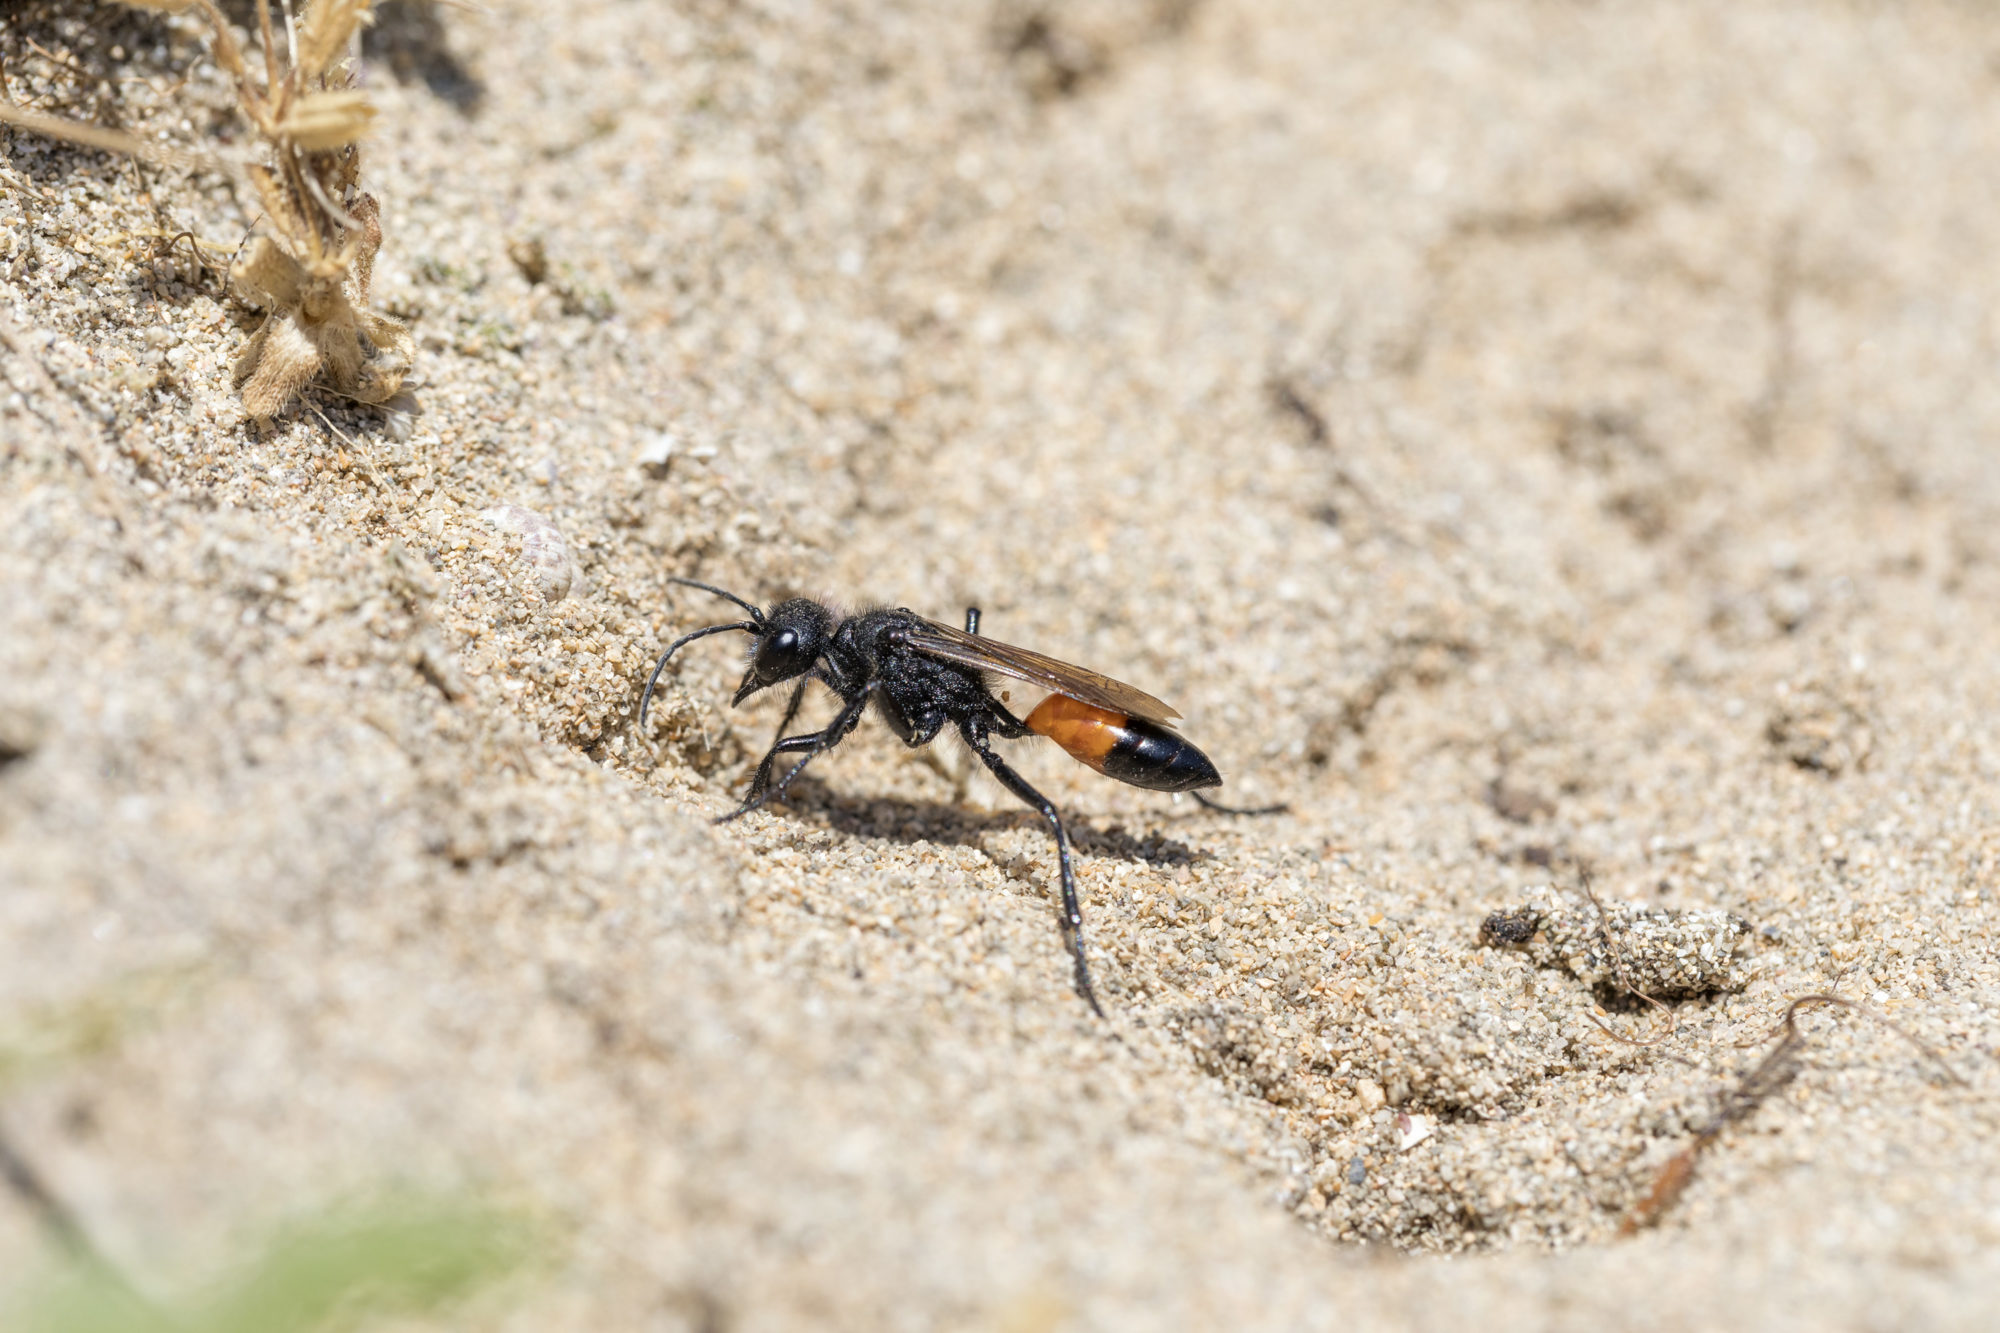 Red-banded sand digger wasps. Credit: David Chapman